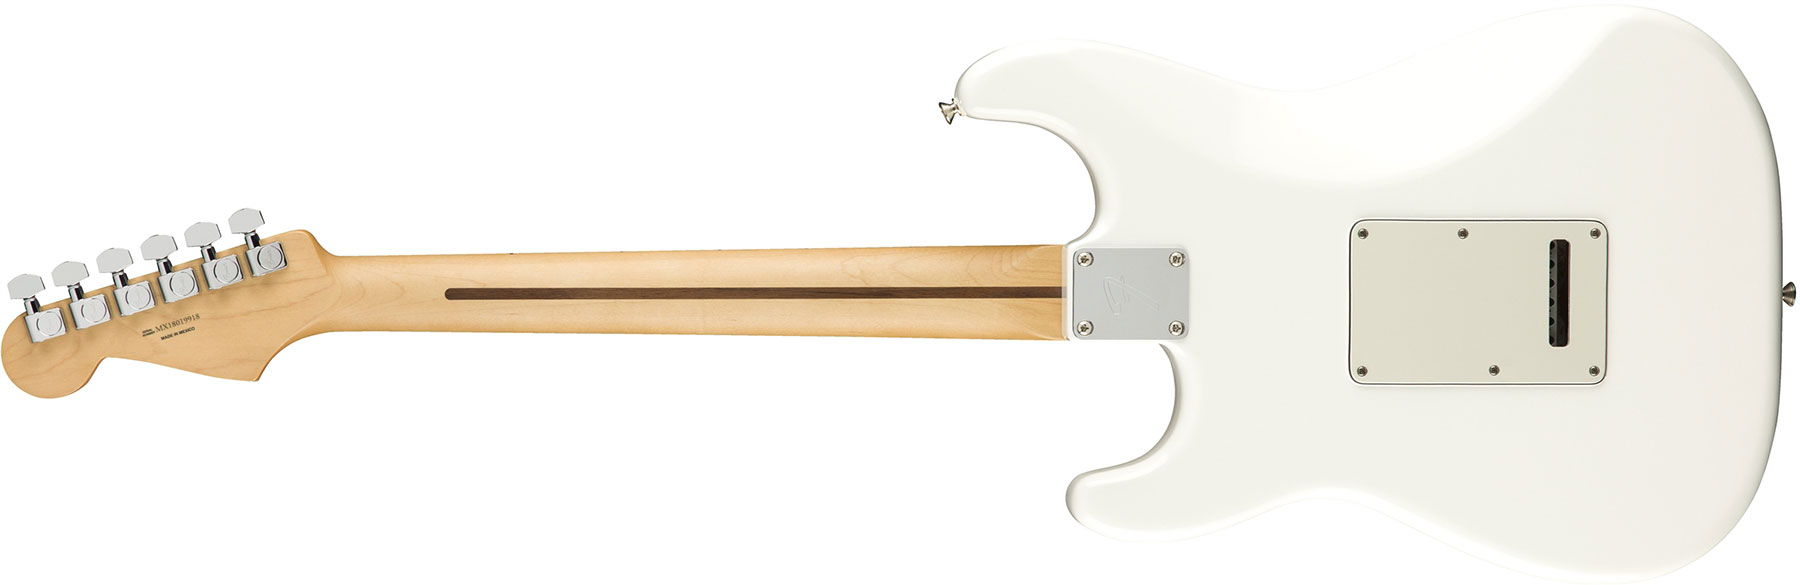 Fender Strat Player Mex Hss Mn - Polar White - E-Gitarre in Str-Form - Variation 1